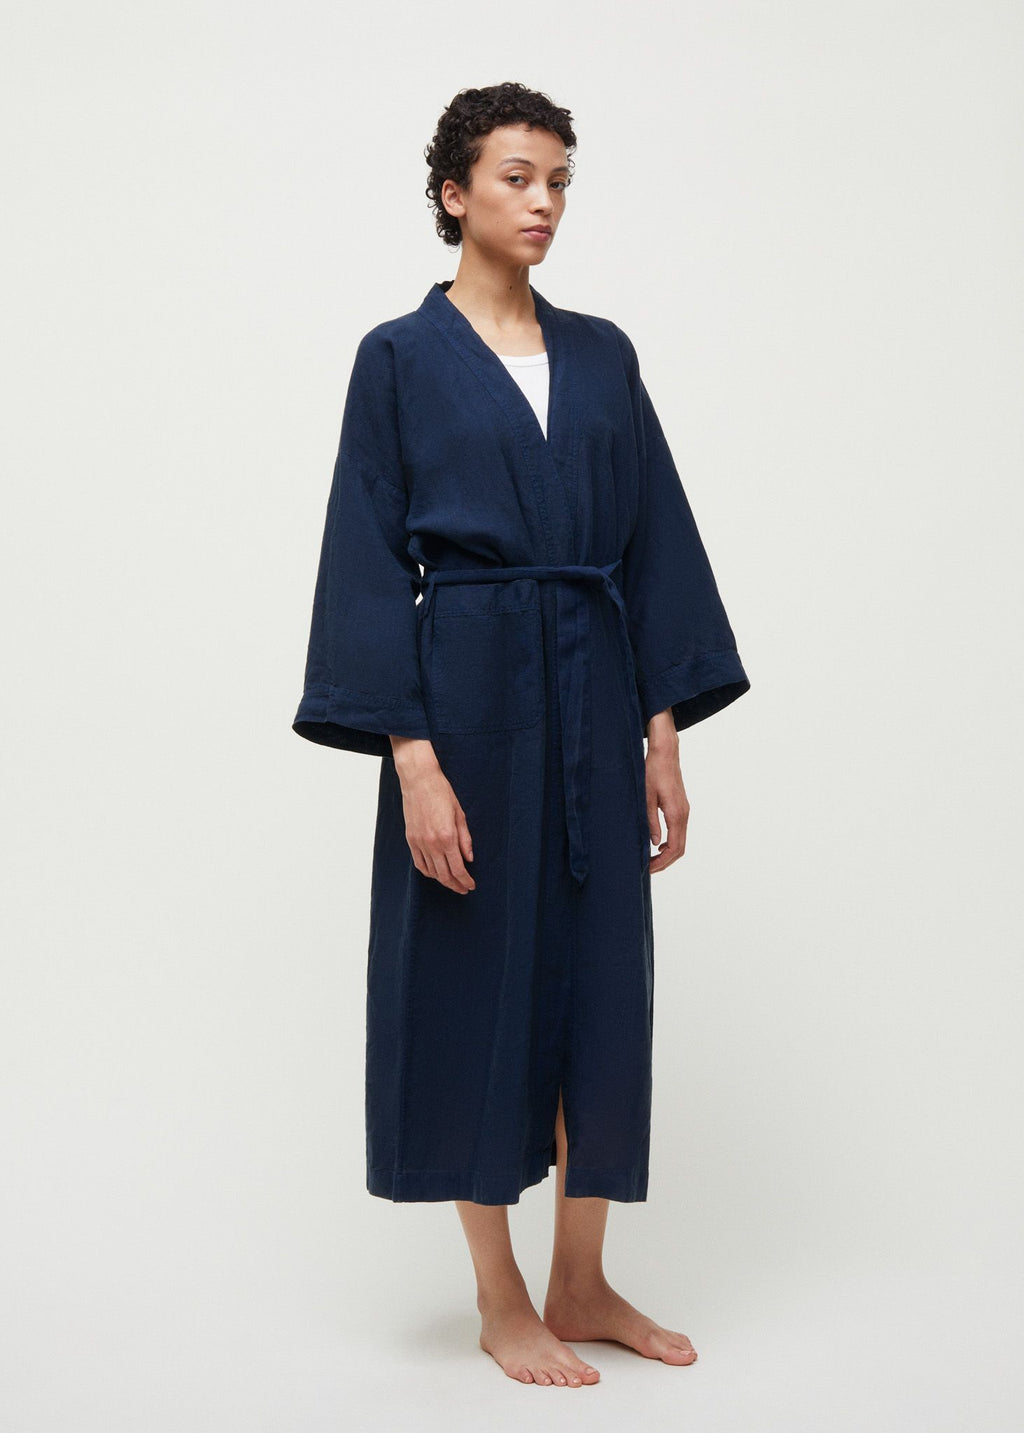 Kimono Linen / Nayy